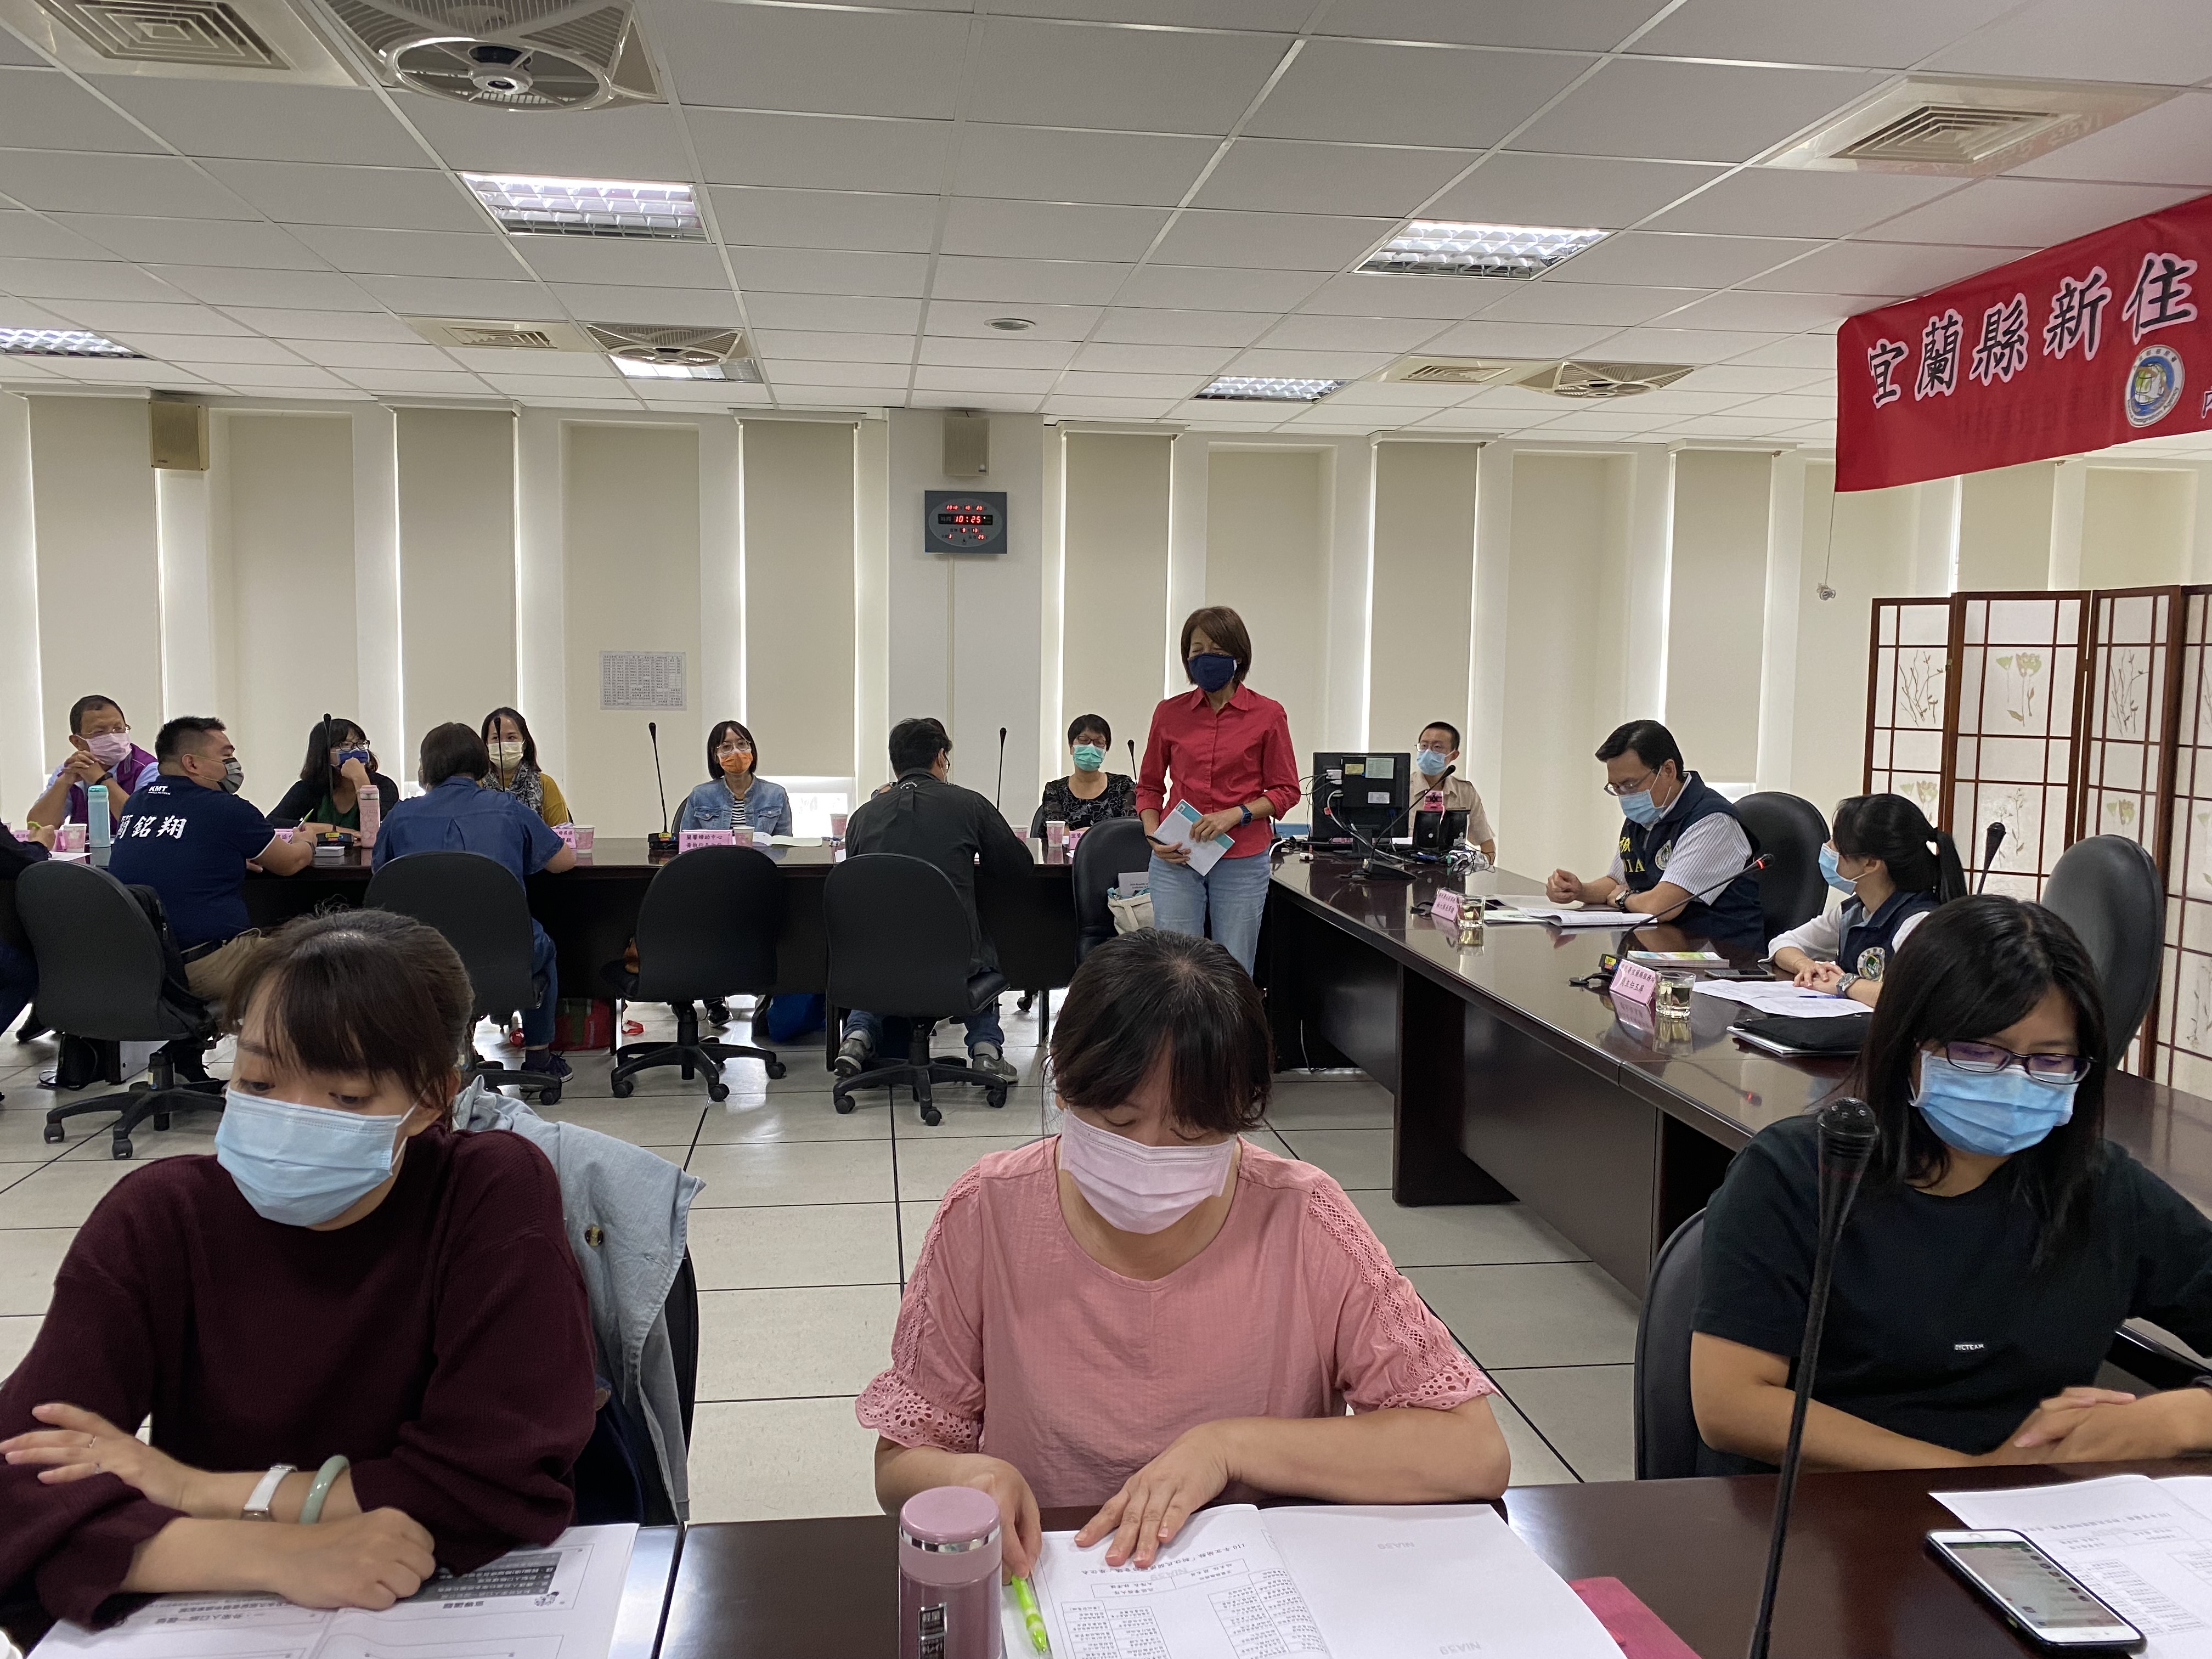 Agensi Imigrasi Nasional membantu warga penduduk baru mewujudkan mimpi mereka di Taiwan. Sumber: Kantor Layanan Imigrasi Yilan